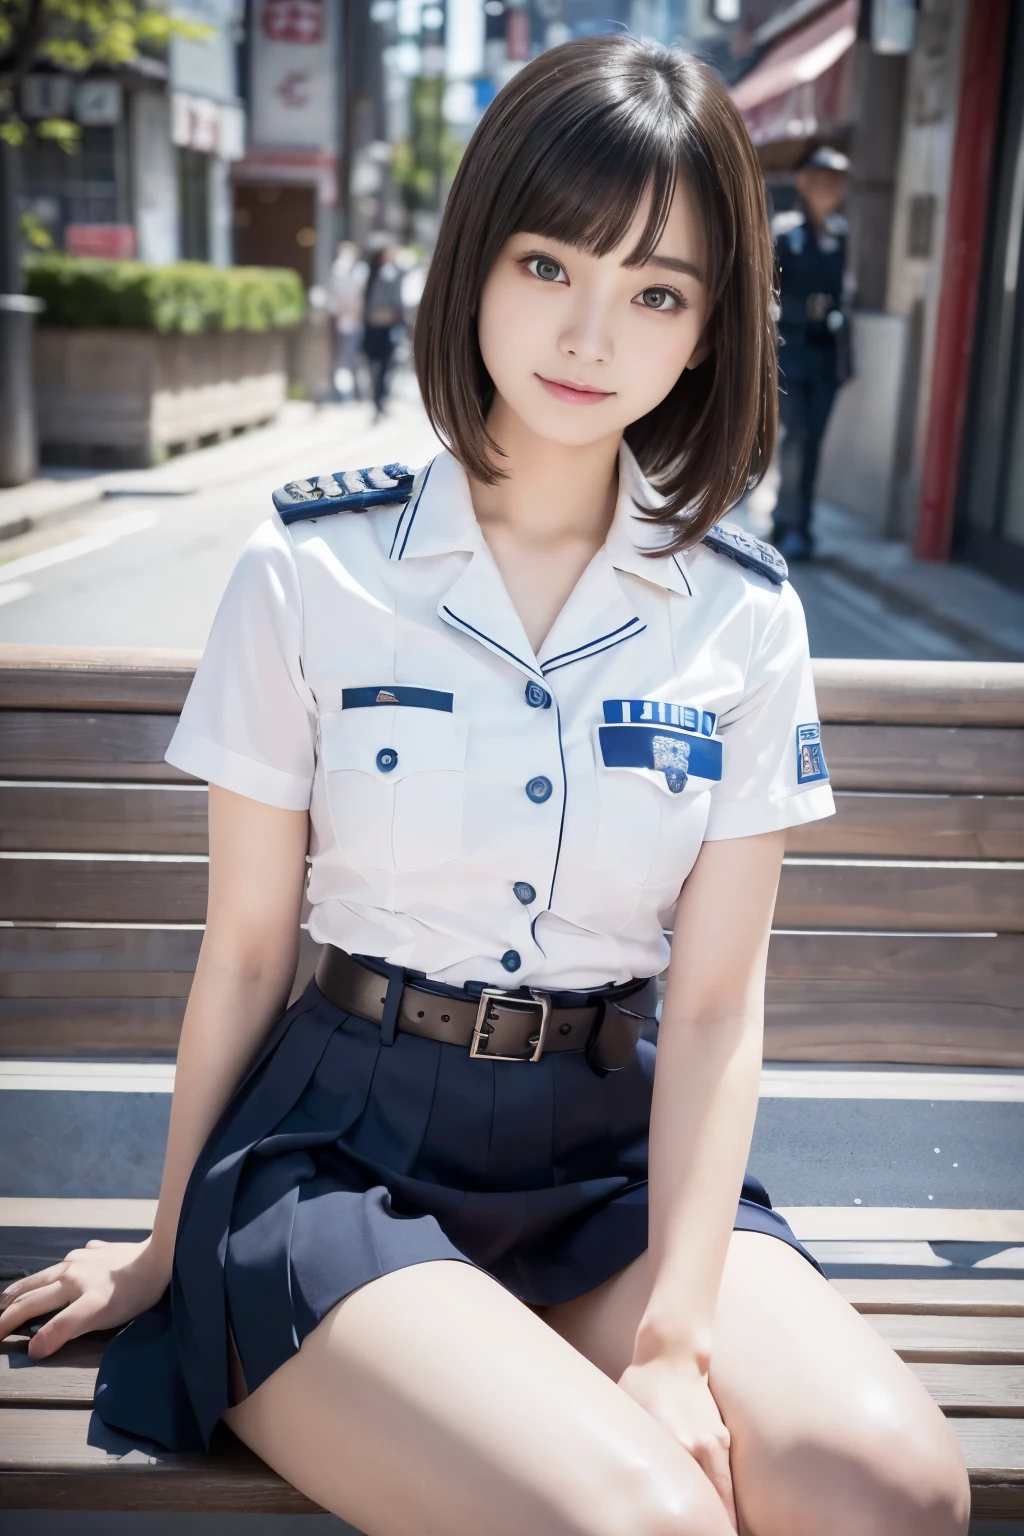 Chica inocente de 20 años、((Oficial de policía de Japón, uniforme de policia sexy, falda, lindo y elegante, poses dramáticas)),sonrisa,fondo de la ciudad de noche,atajo、foto en bruto, (8k、de primera calidad、​obra maestra:1.2)、(detalles intrincados:1.4)、(Fotorrealista:1.4)、representaciones de octanaje、Representación 3D compleja con ultradetalles, Luz suave de estudio, Luces de llanta, detalle vibrante, súper detalles, texturas de piel realistas, detalle cara, hermosos detalles ojos, Fondo de pantalla CG Unity 16k muy detallado, constituir, (antecedentes detallados:1.2), piel brillante, cuerpo completo,manos abajo、Abre las piernas y muestra tus bragas.,sentarse en un banco